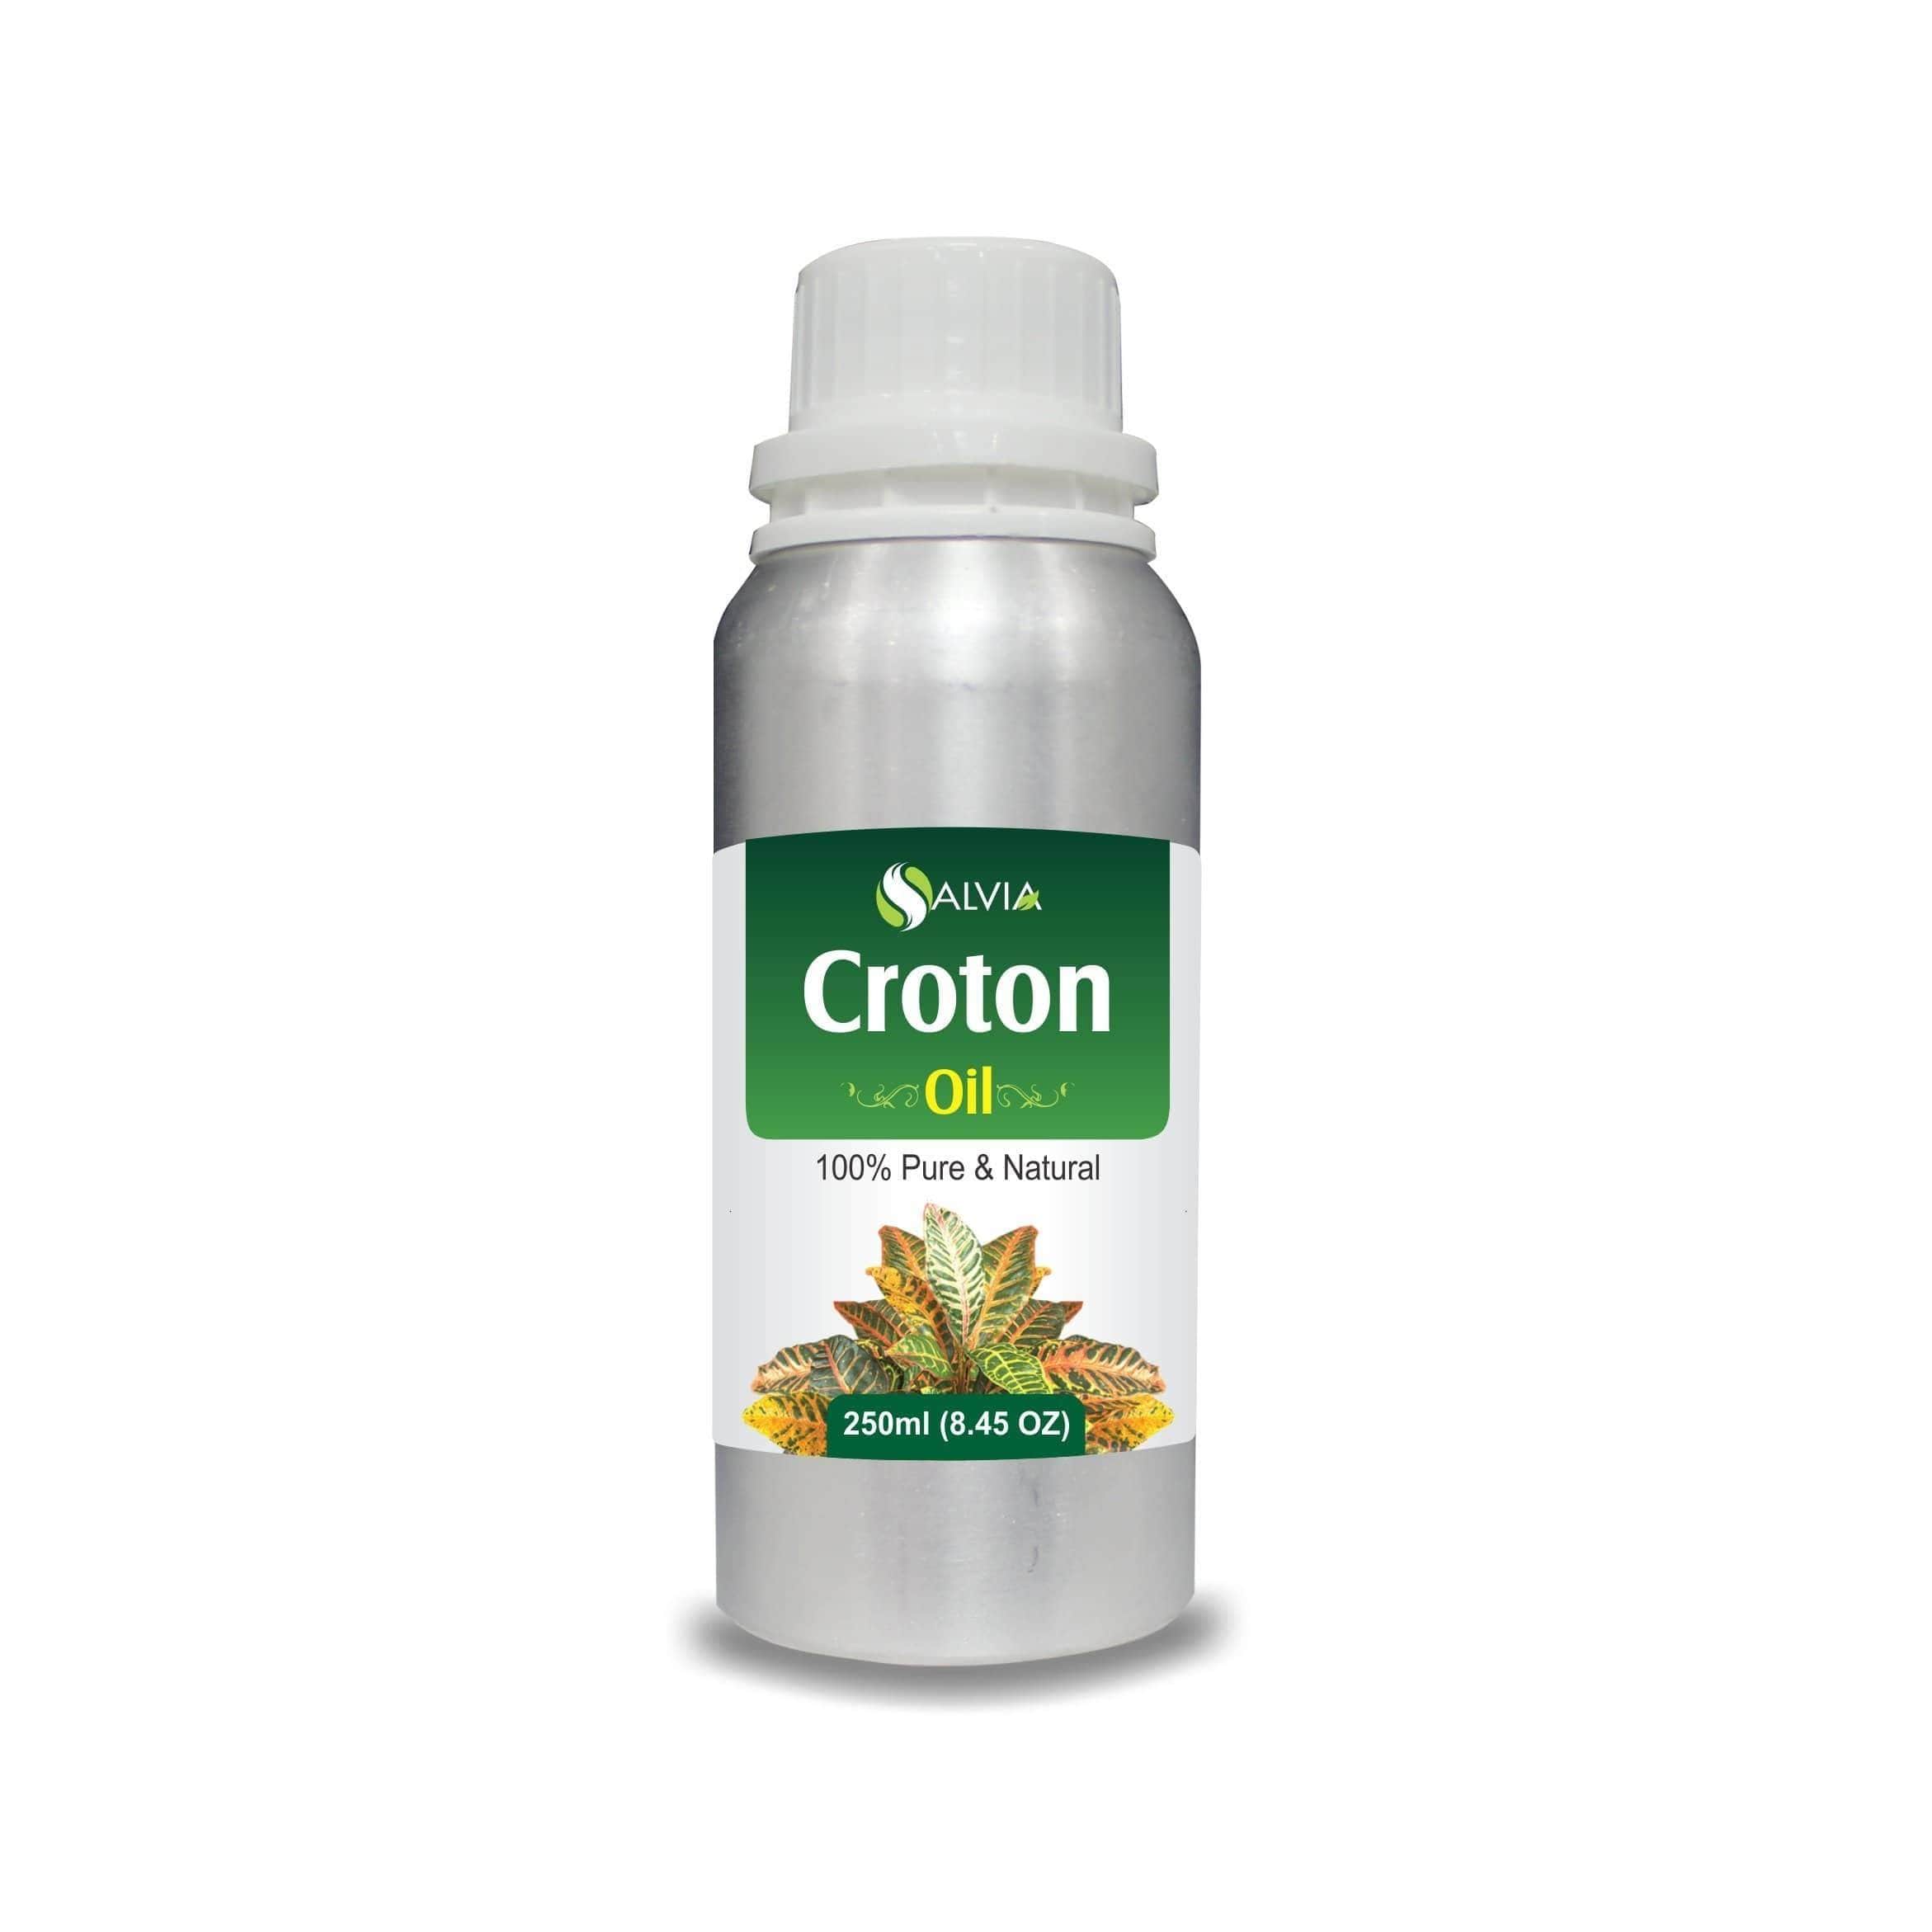 croton oil uses